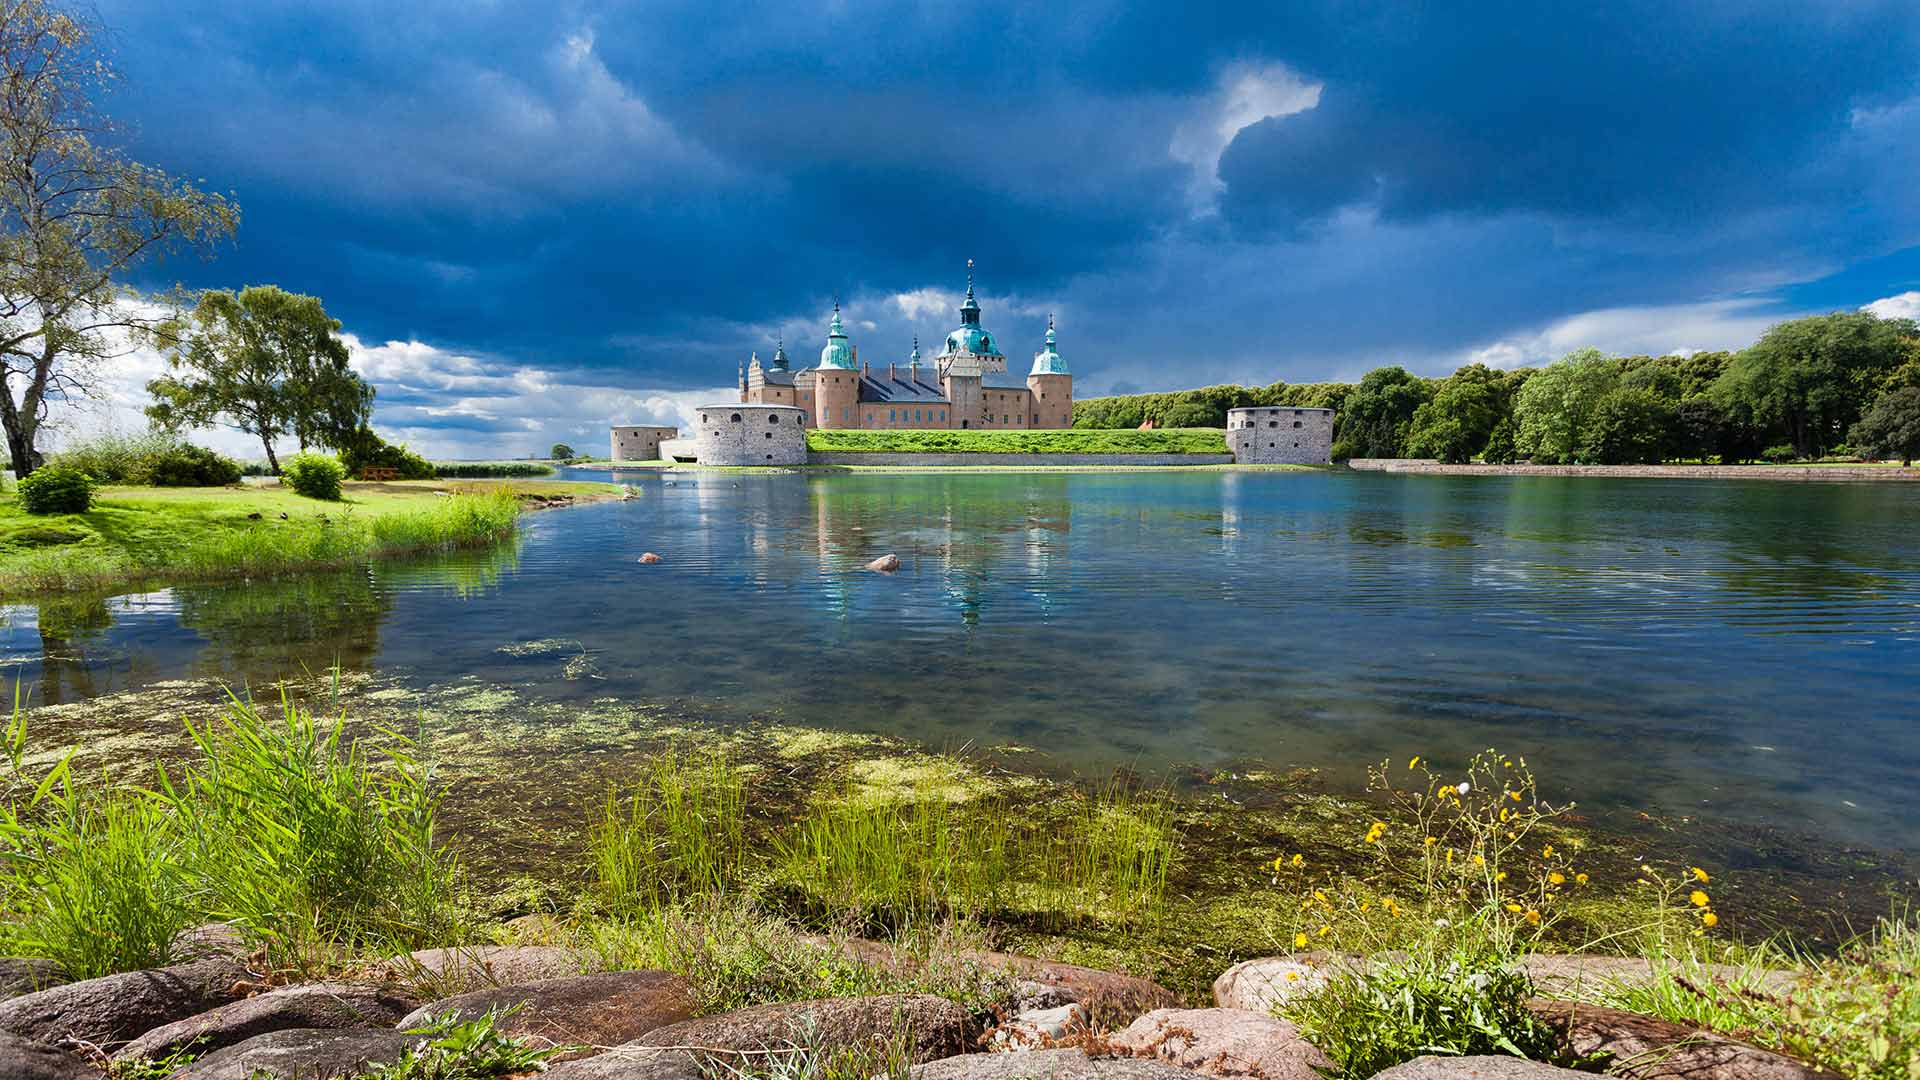 Kalmar Castle on Slottsholmen